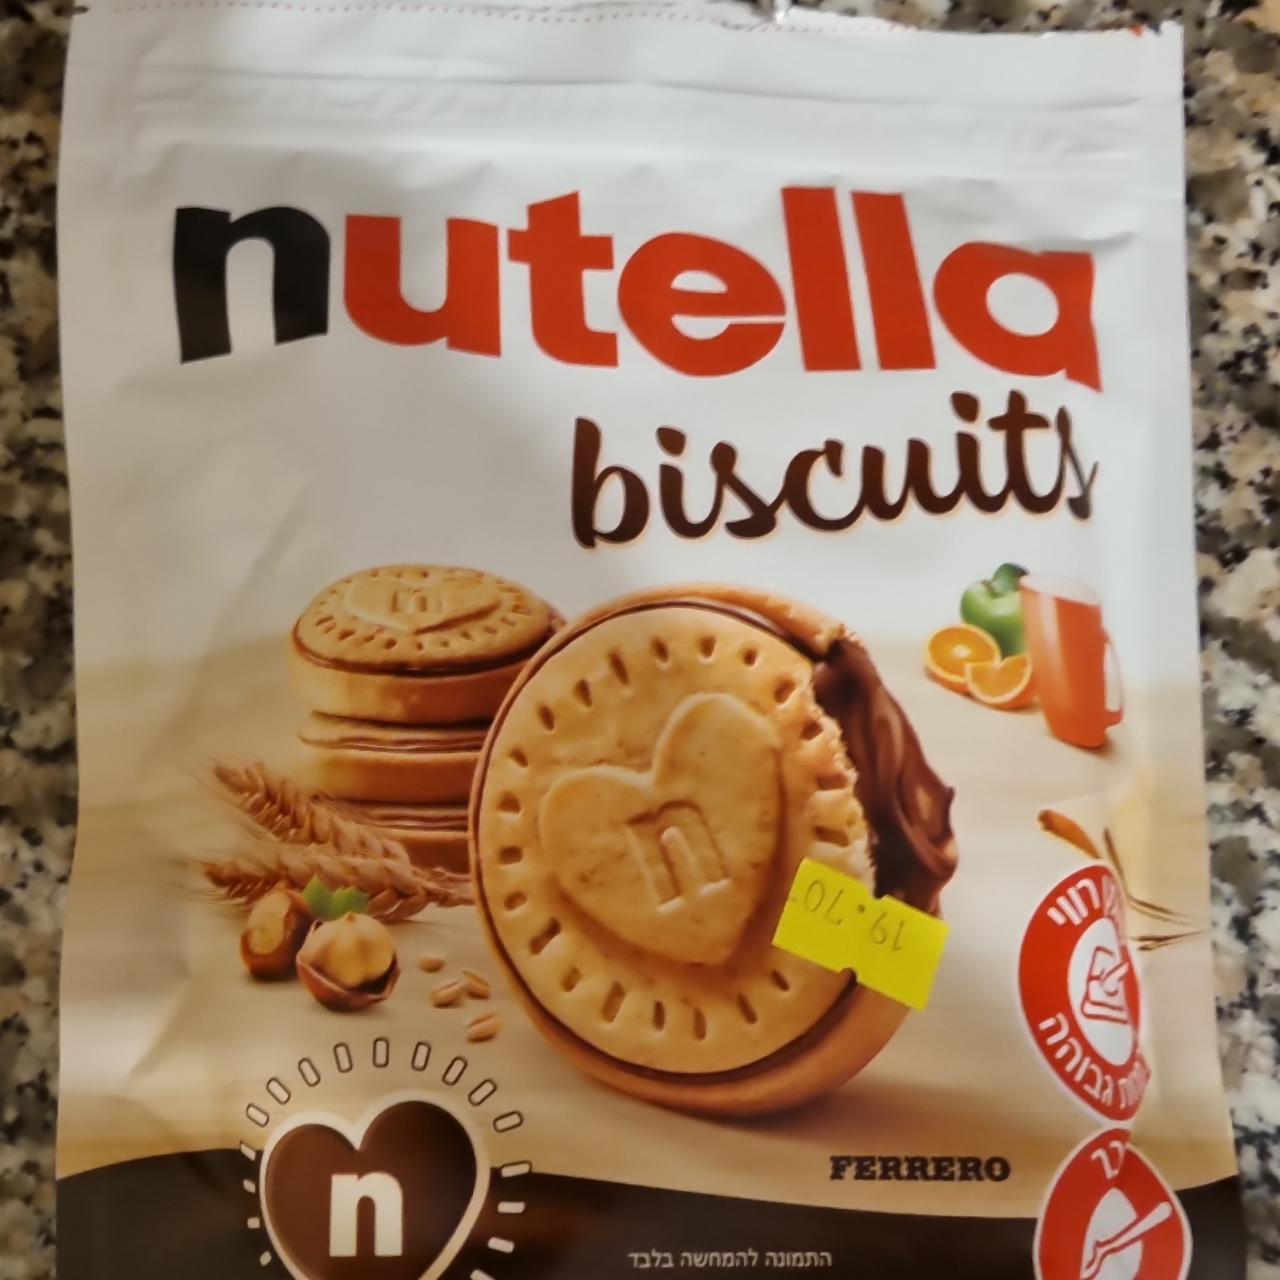 Képek - Nutella biscuits